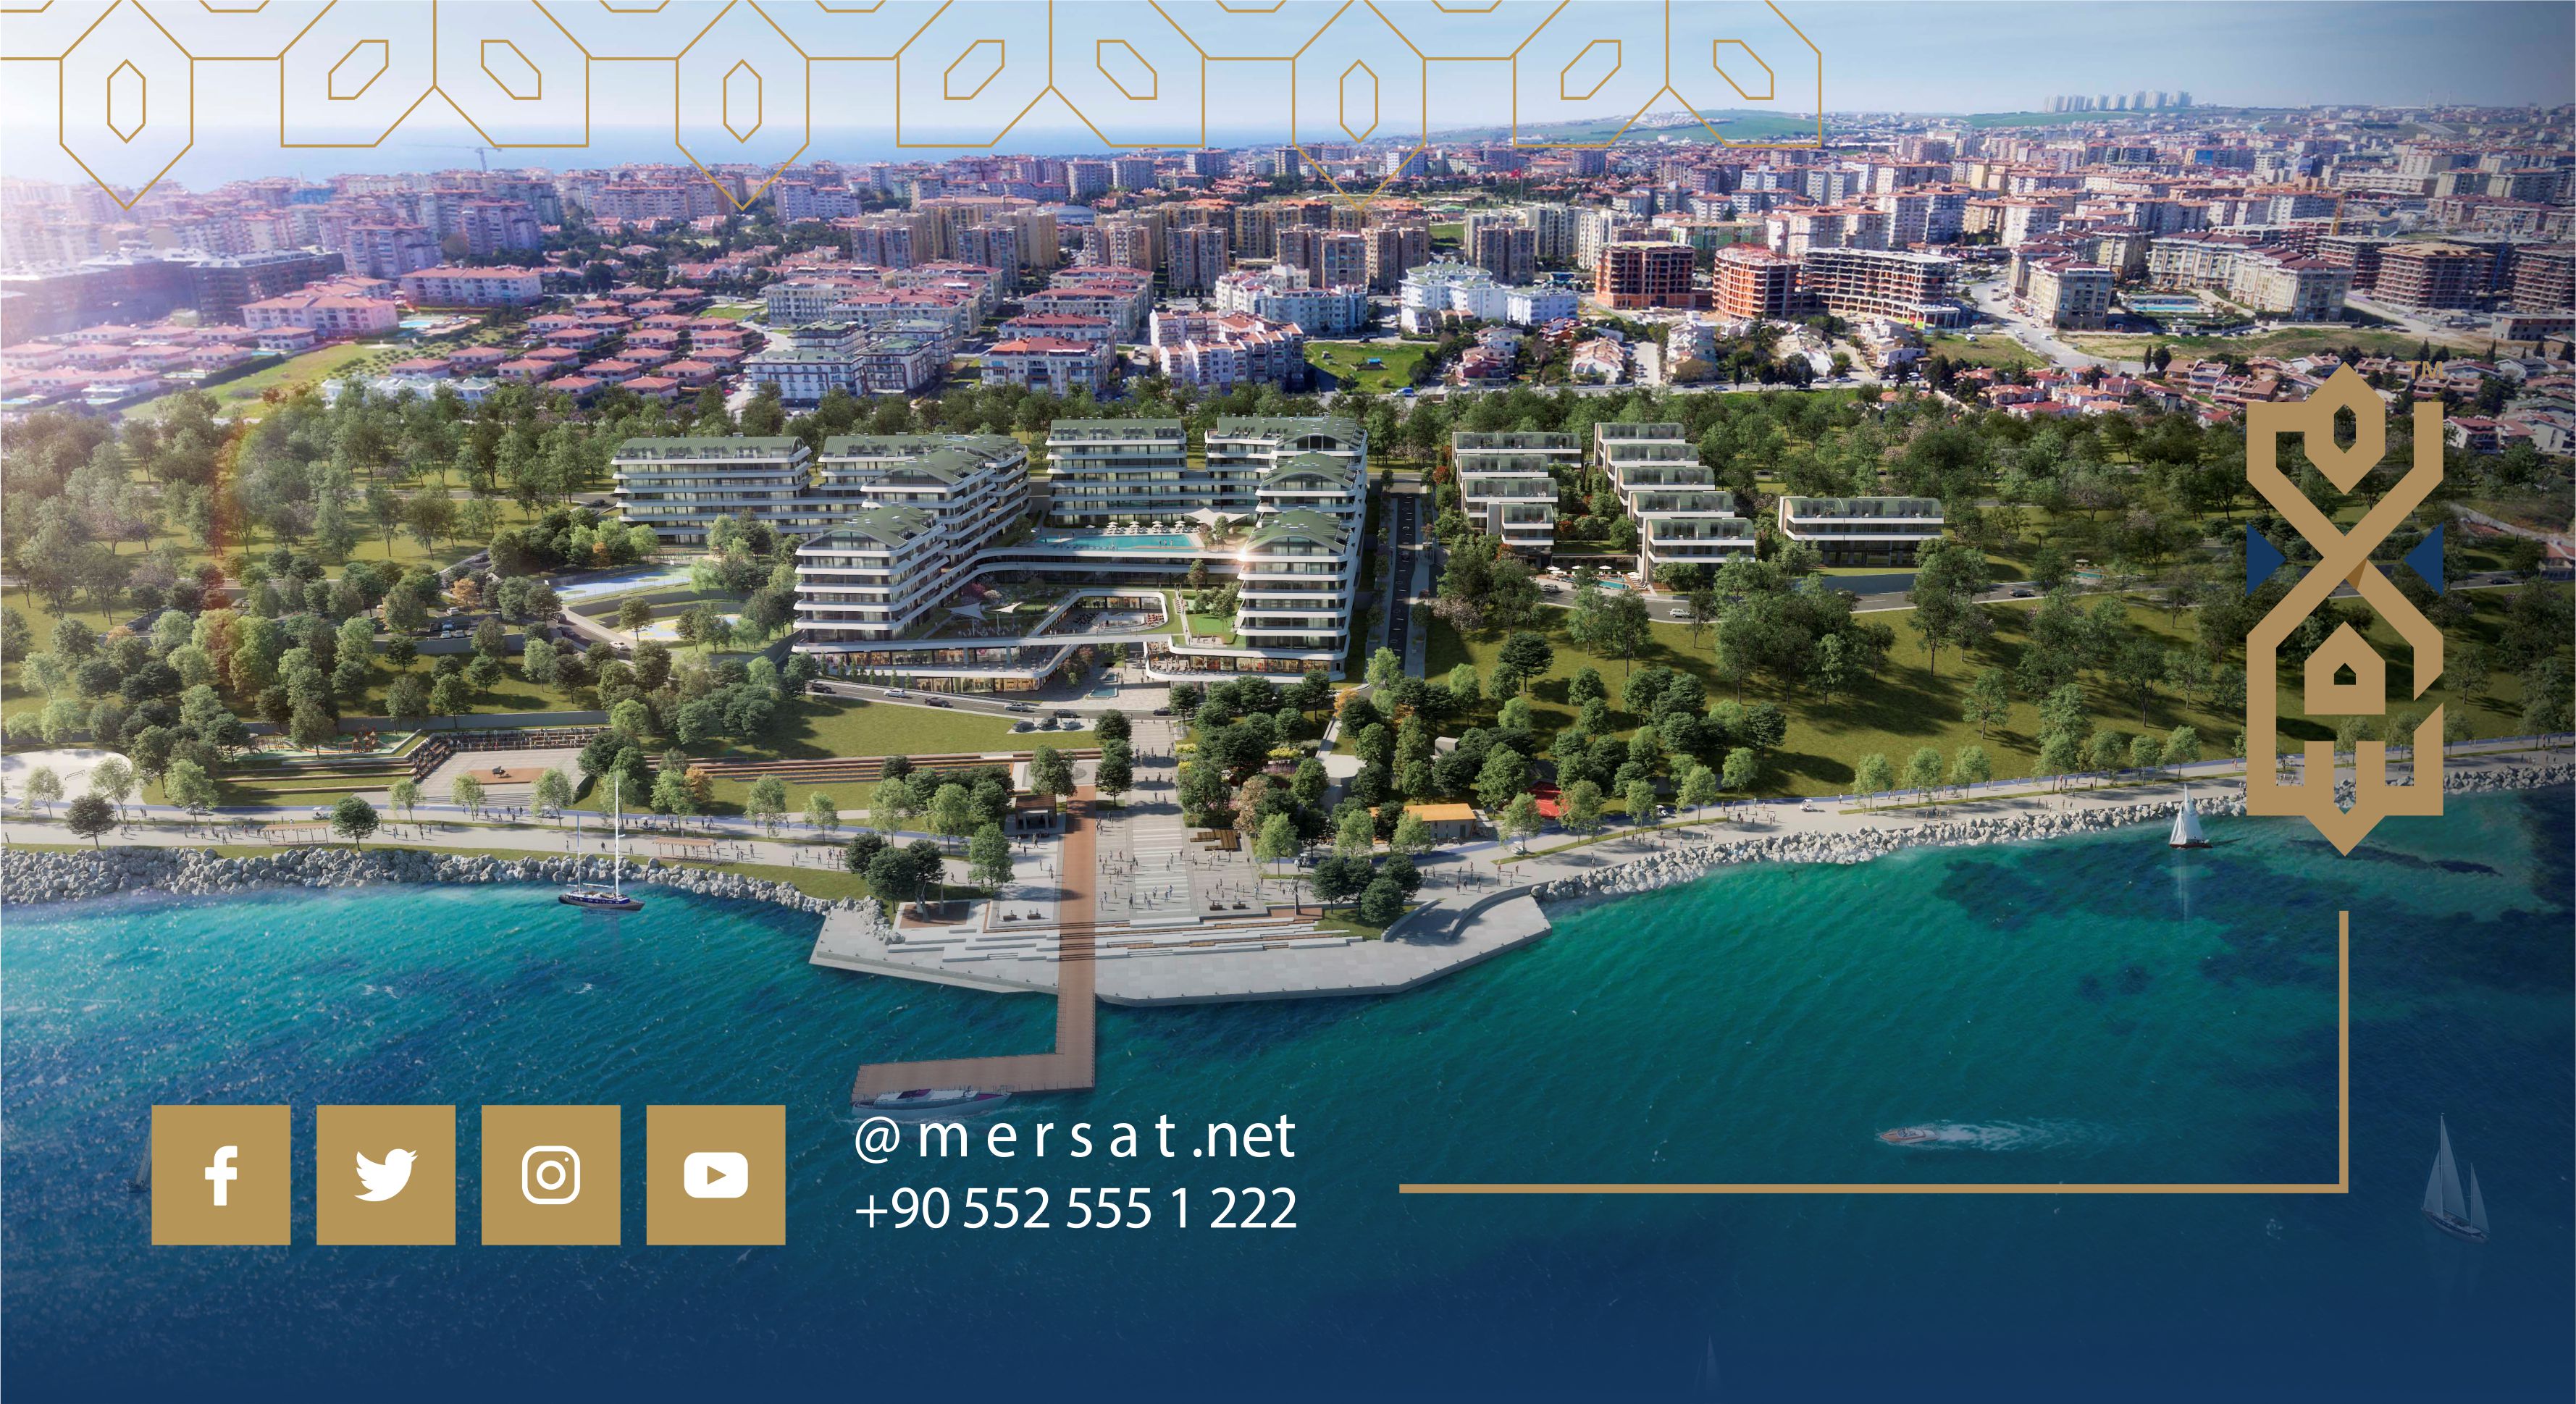 منطقة بحر مرمرة من أهم مناطق الاستثمار العقاري في تركيا